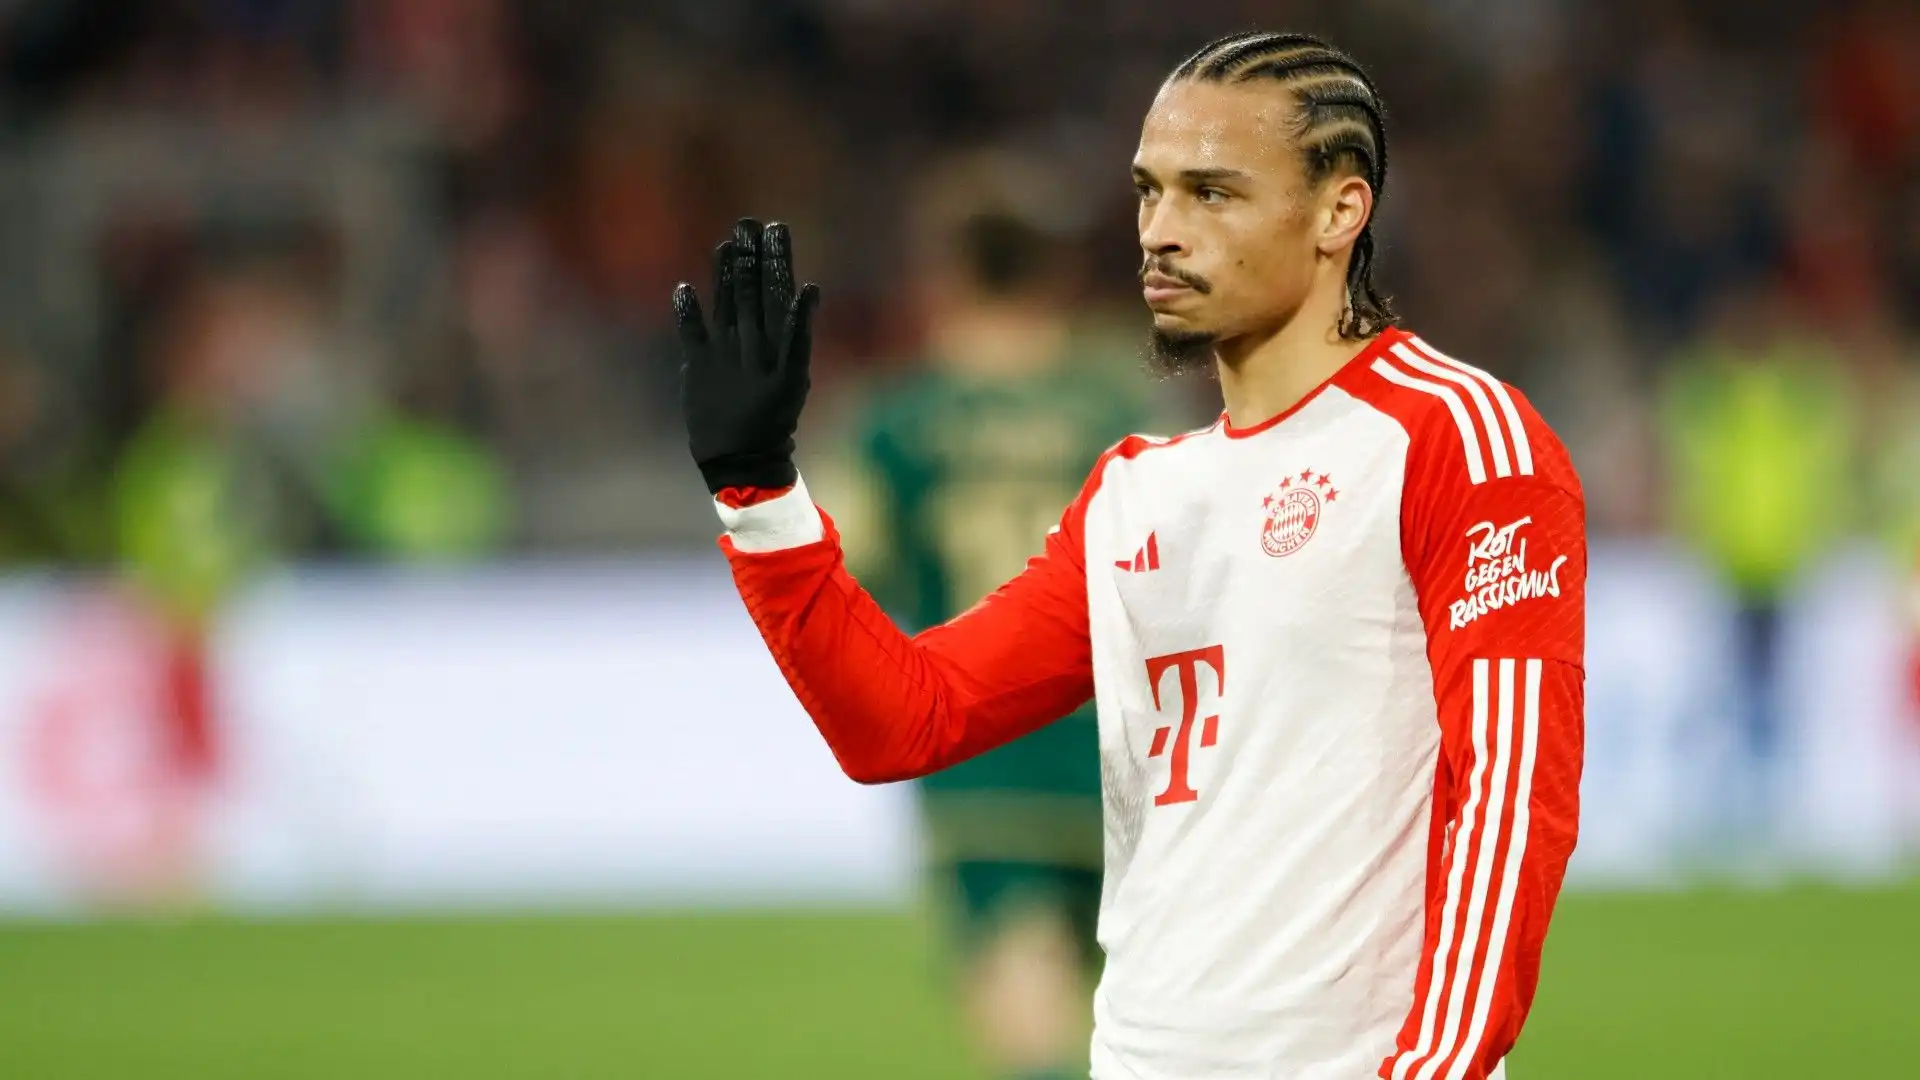 Il Bayern Monaco ha in agenda un incontro con Leroy Sané per discutere del rinnovo